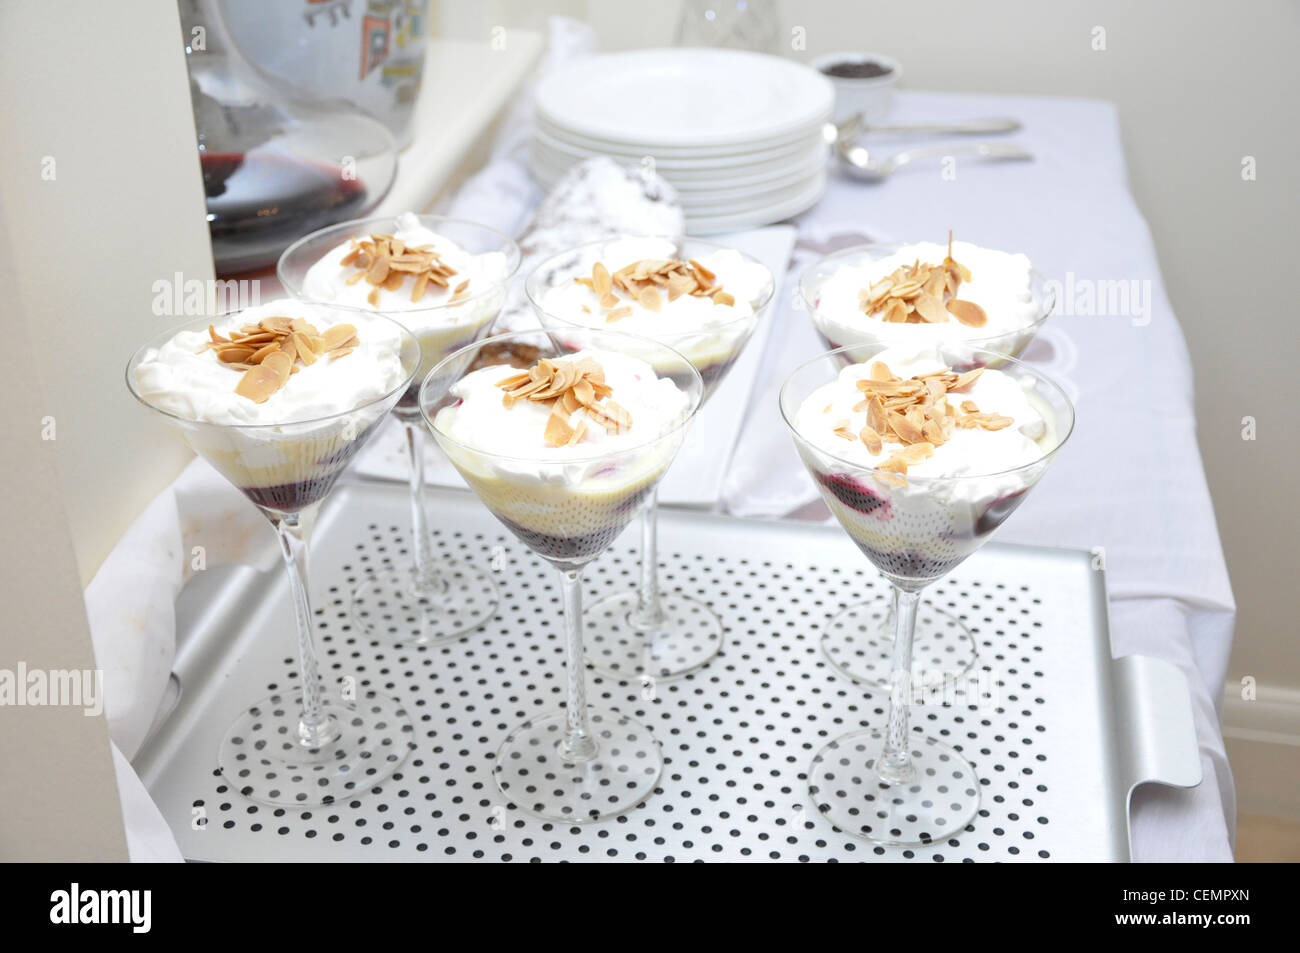 Red fruit / cream desserts in manhatten glass Stock Photo